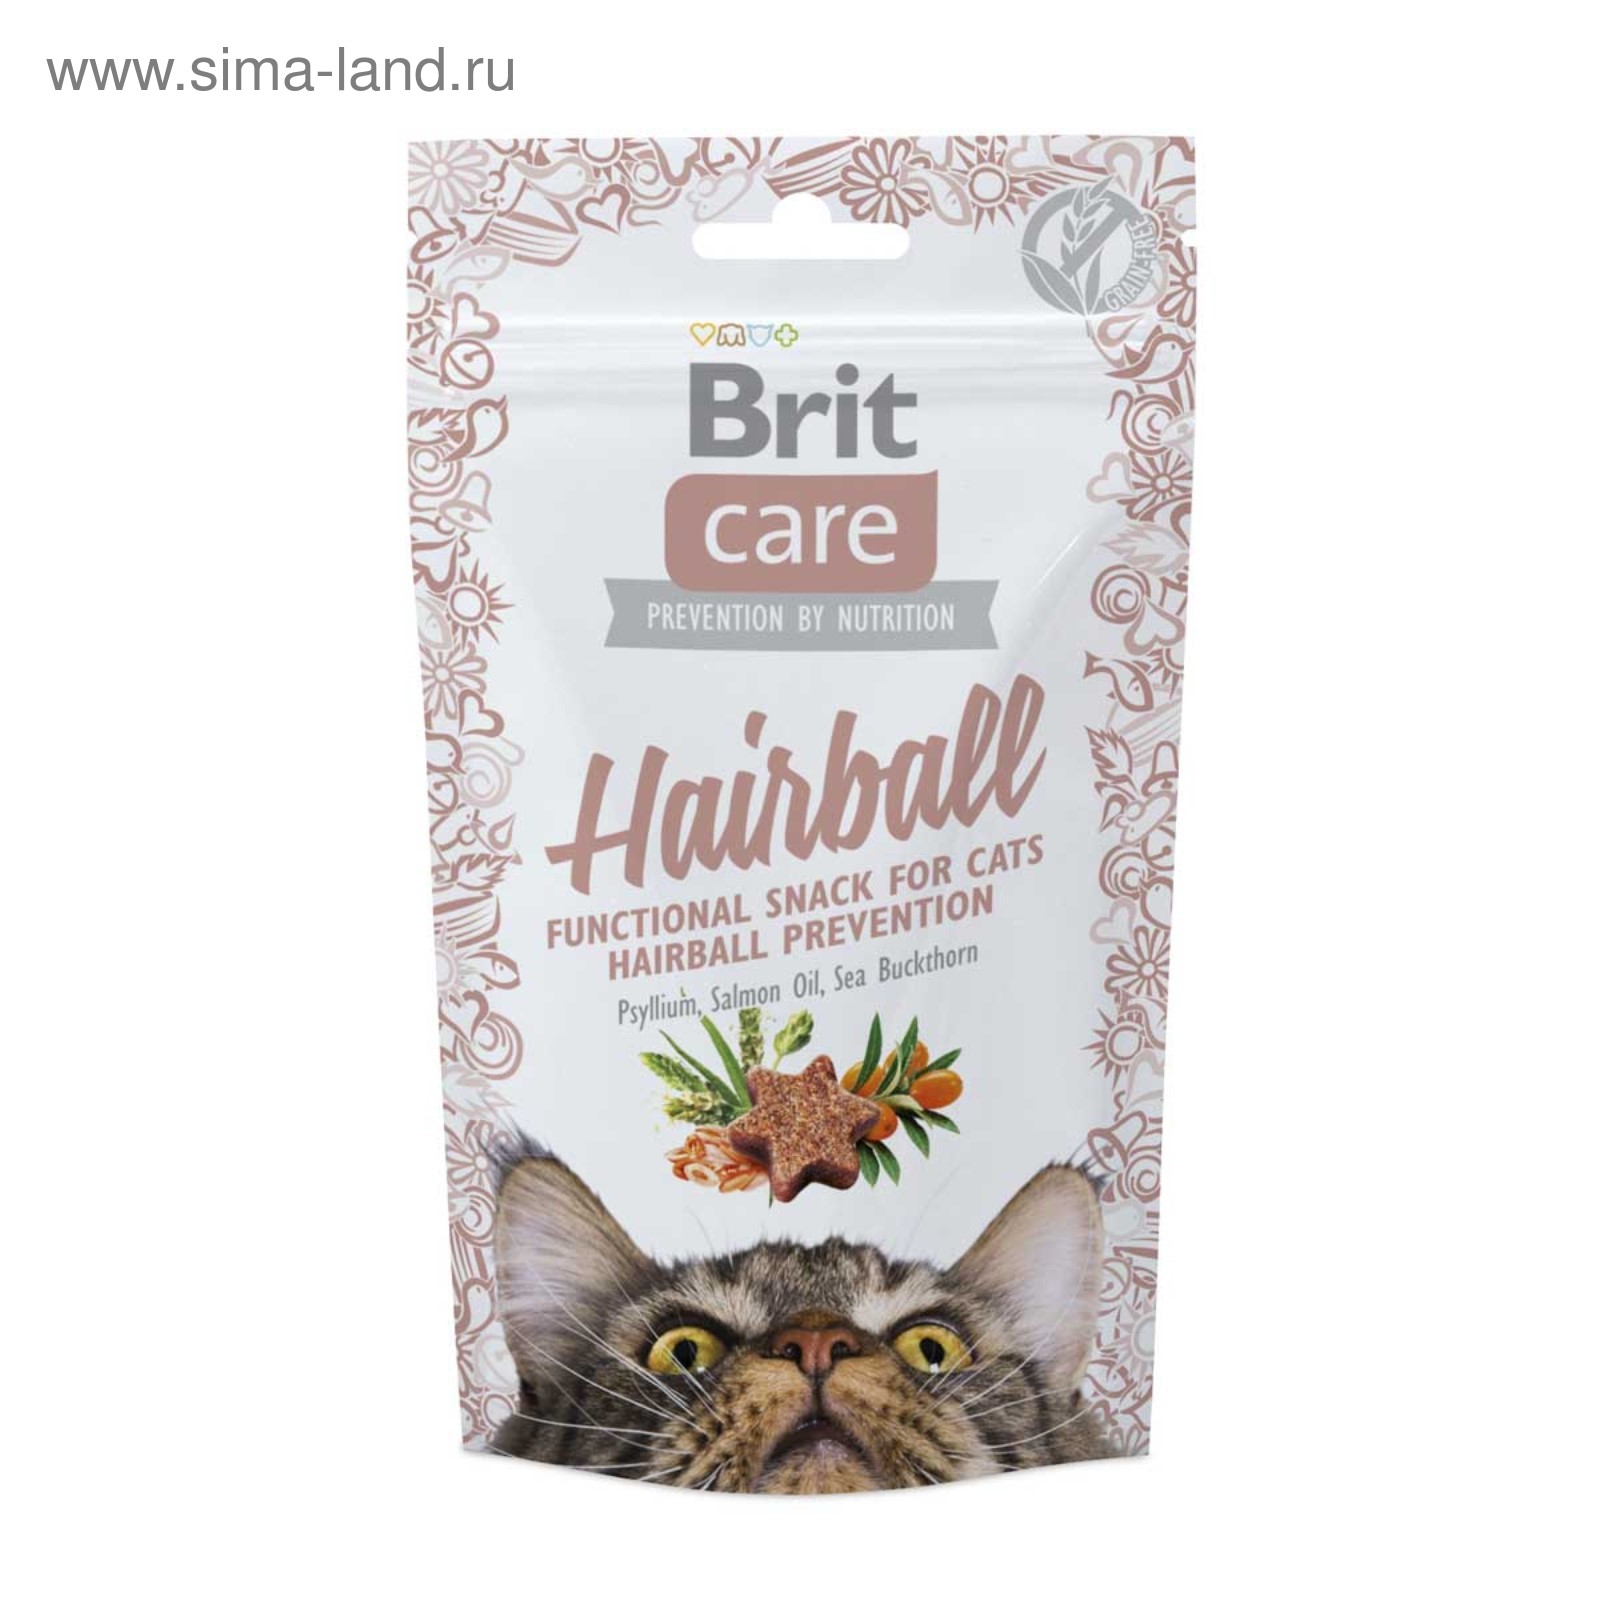 Care Hairball лакомство для кошек для вывода комков шерсти, Brit от зоомагазина Дино Зоо